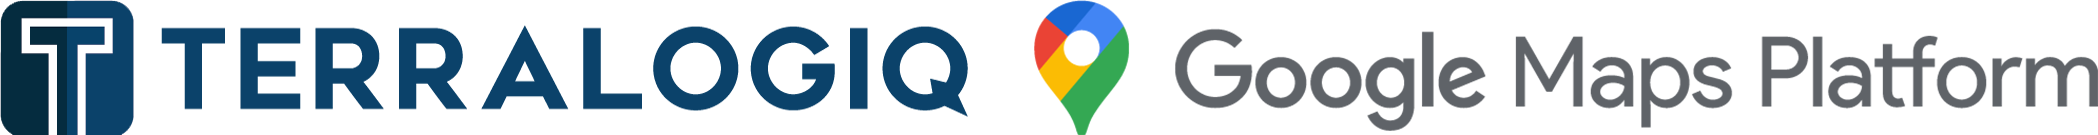 logo terralogiq dan google maps baru